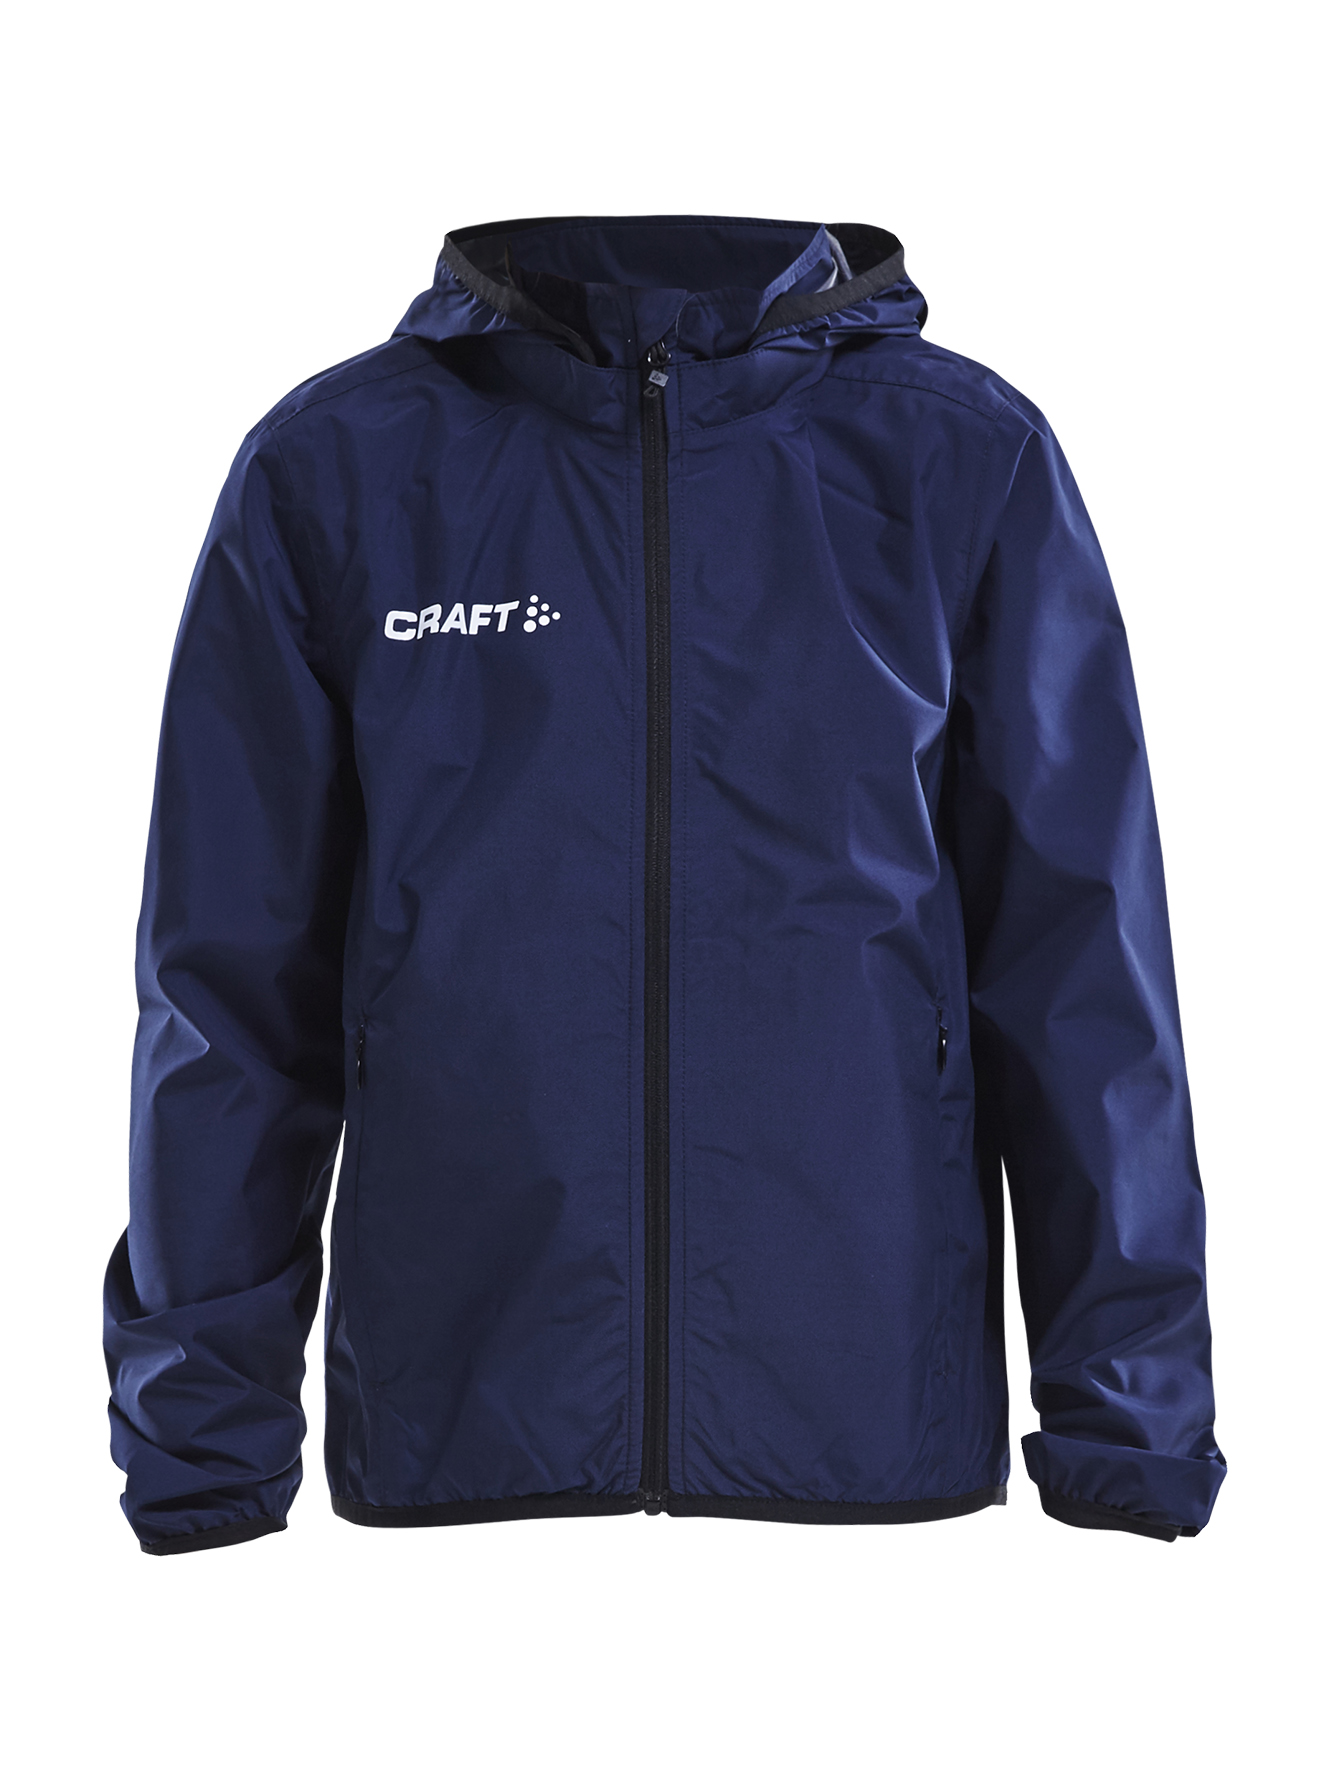 Craft Jacket Rain JR NAVY/BRIGHT